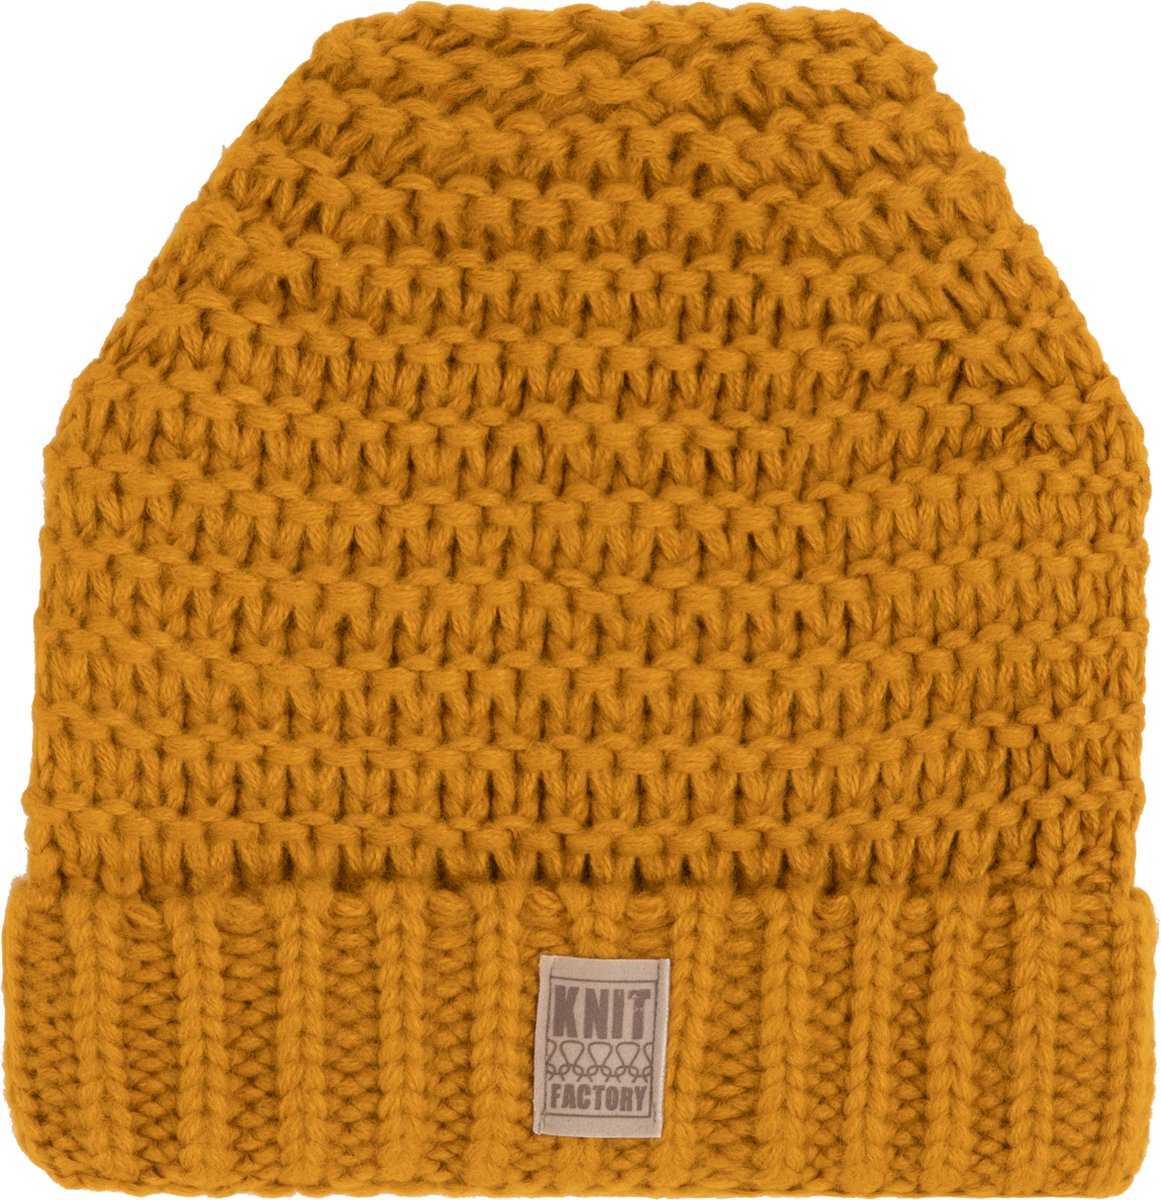 Knit Factory Alex Gebreide Muts Heren & Dames - Beanie hat - Oker - Grofgebreid - Warme gele Wintermuts - Unisex - One Size